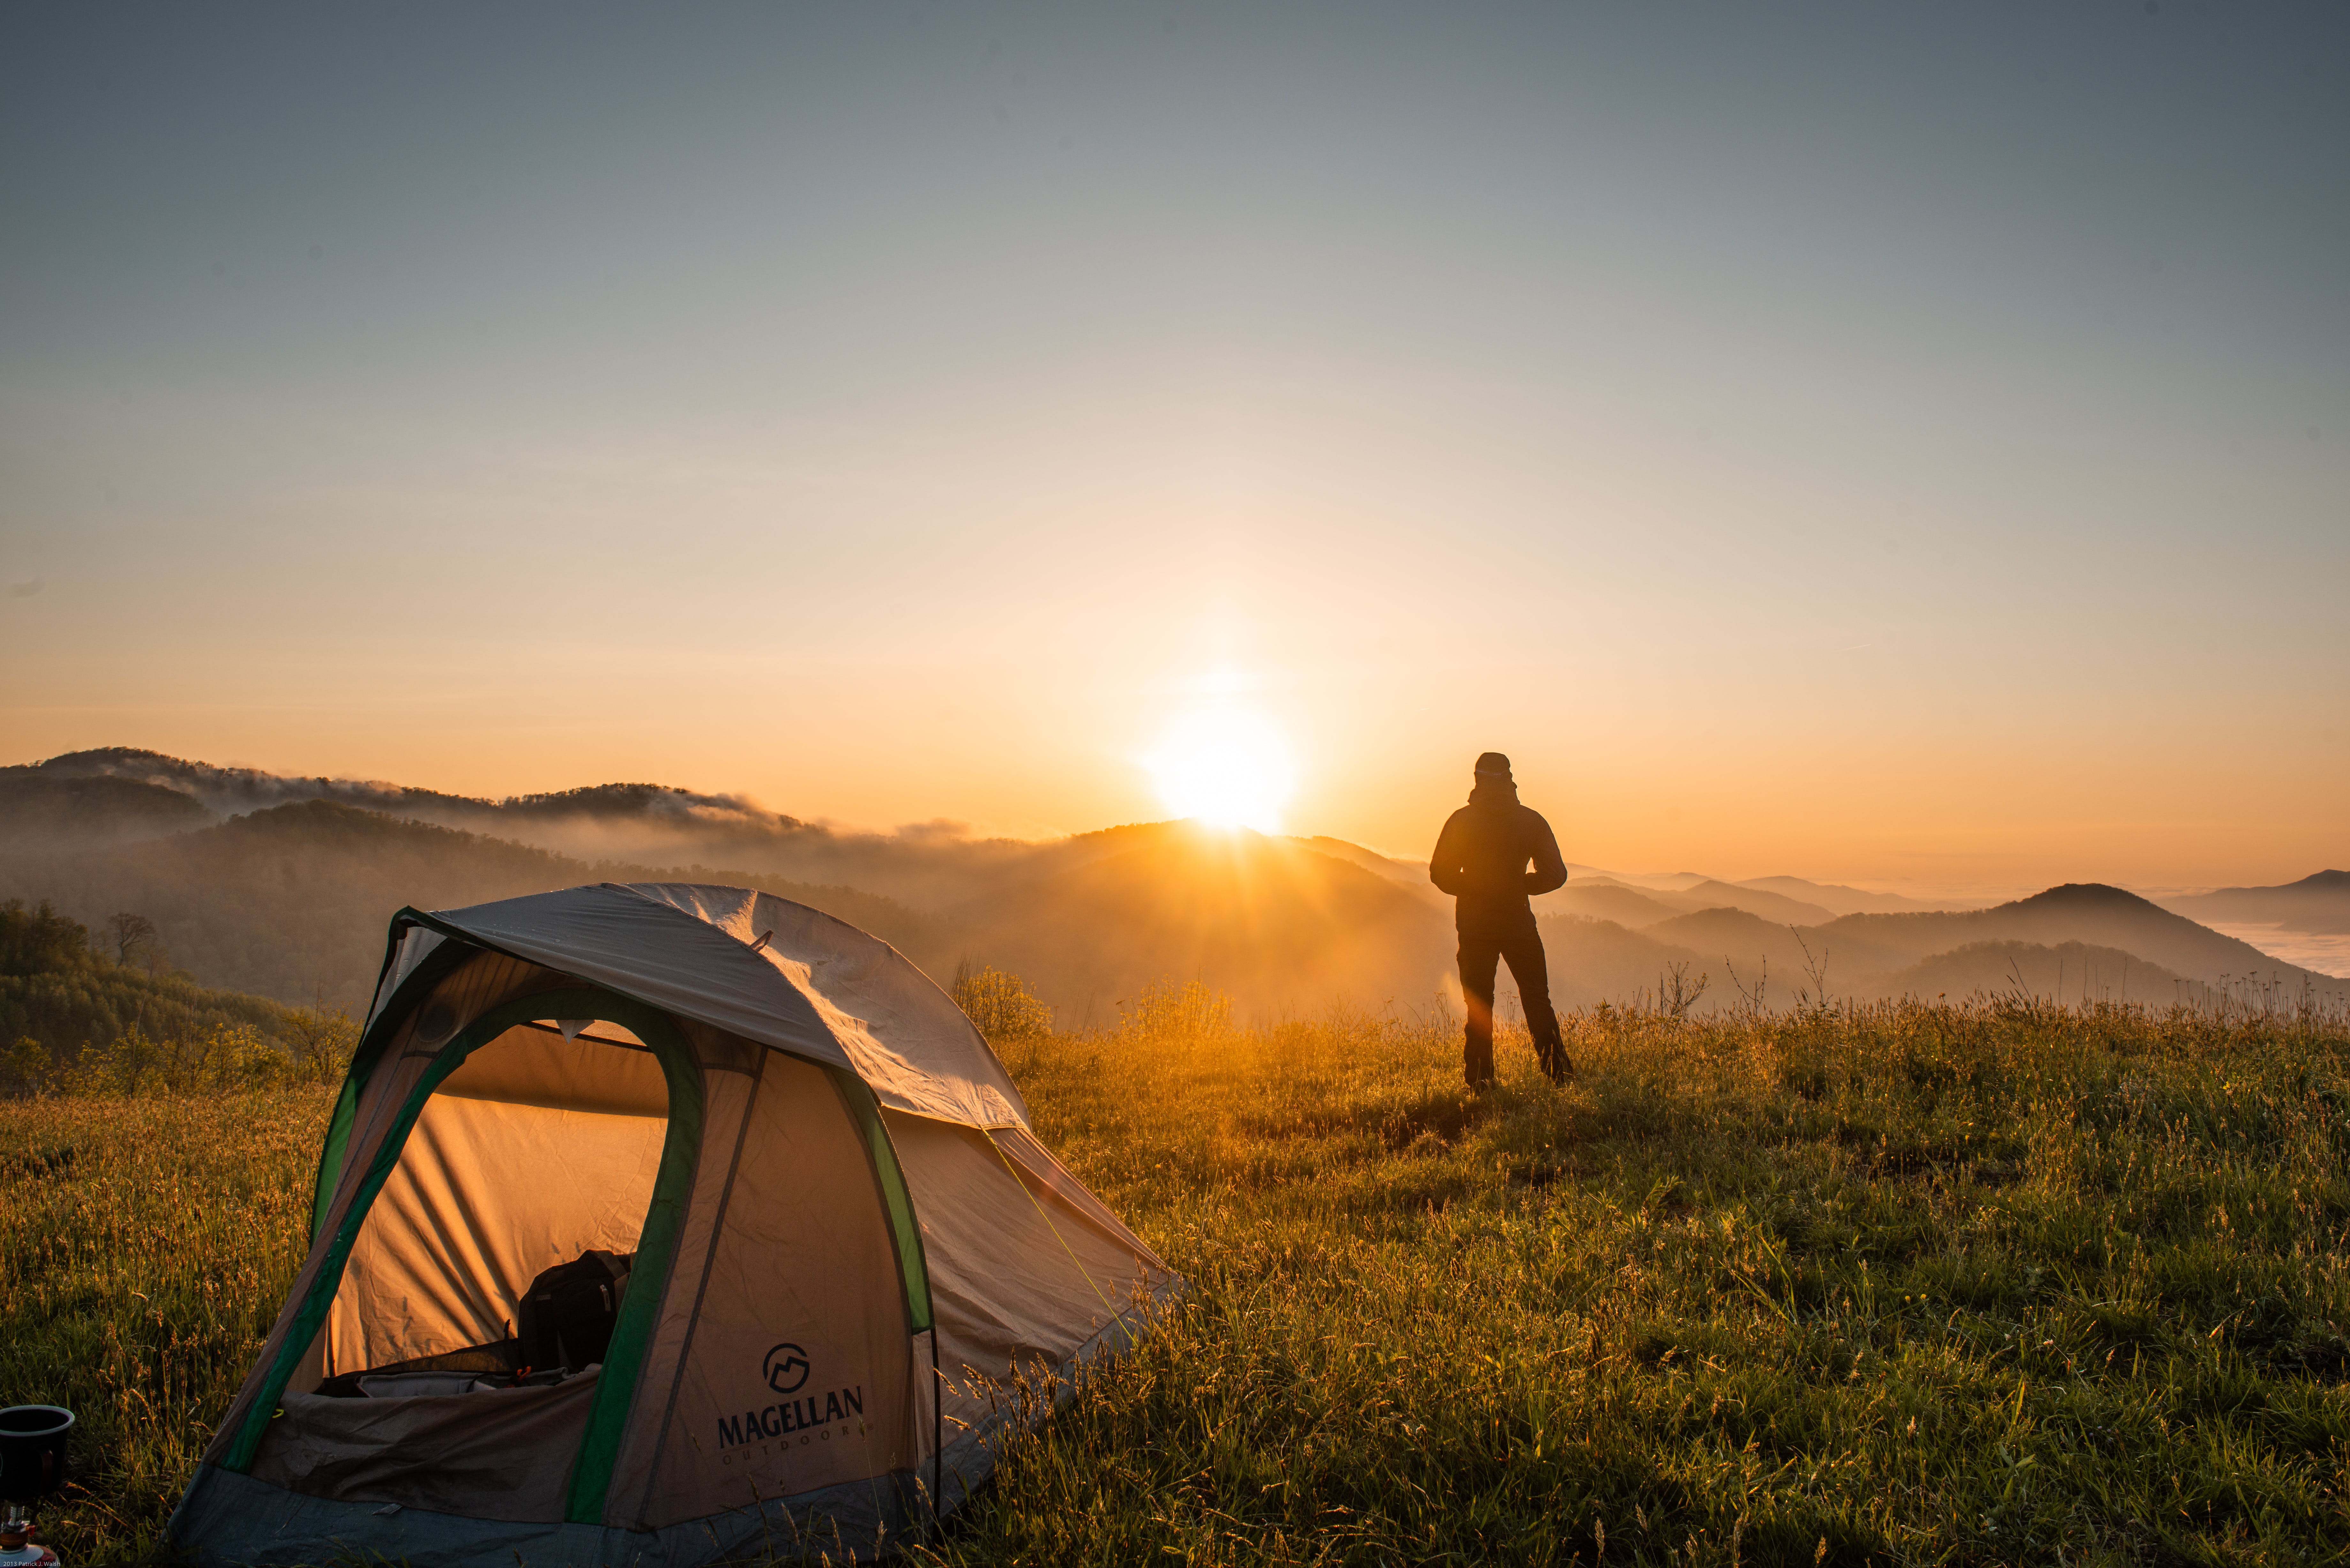 A camper and his tent | Source: Pexels